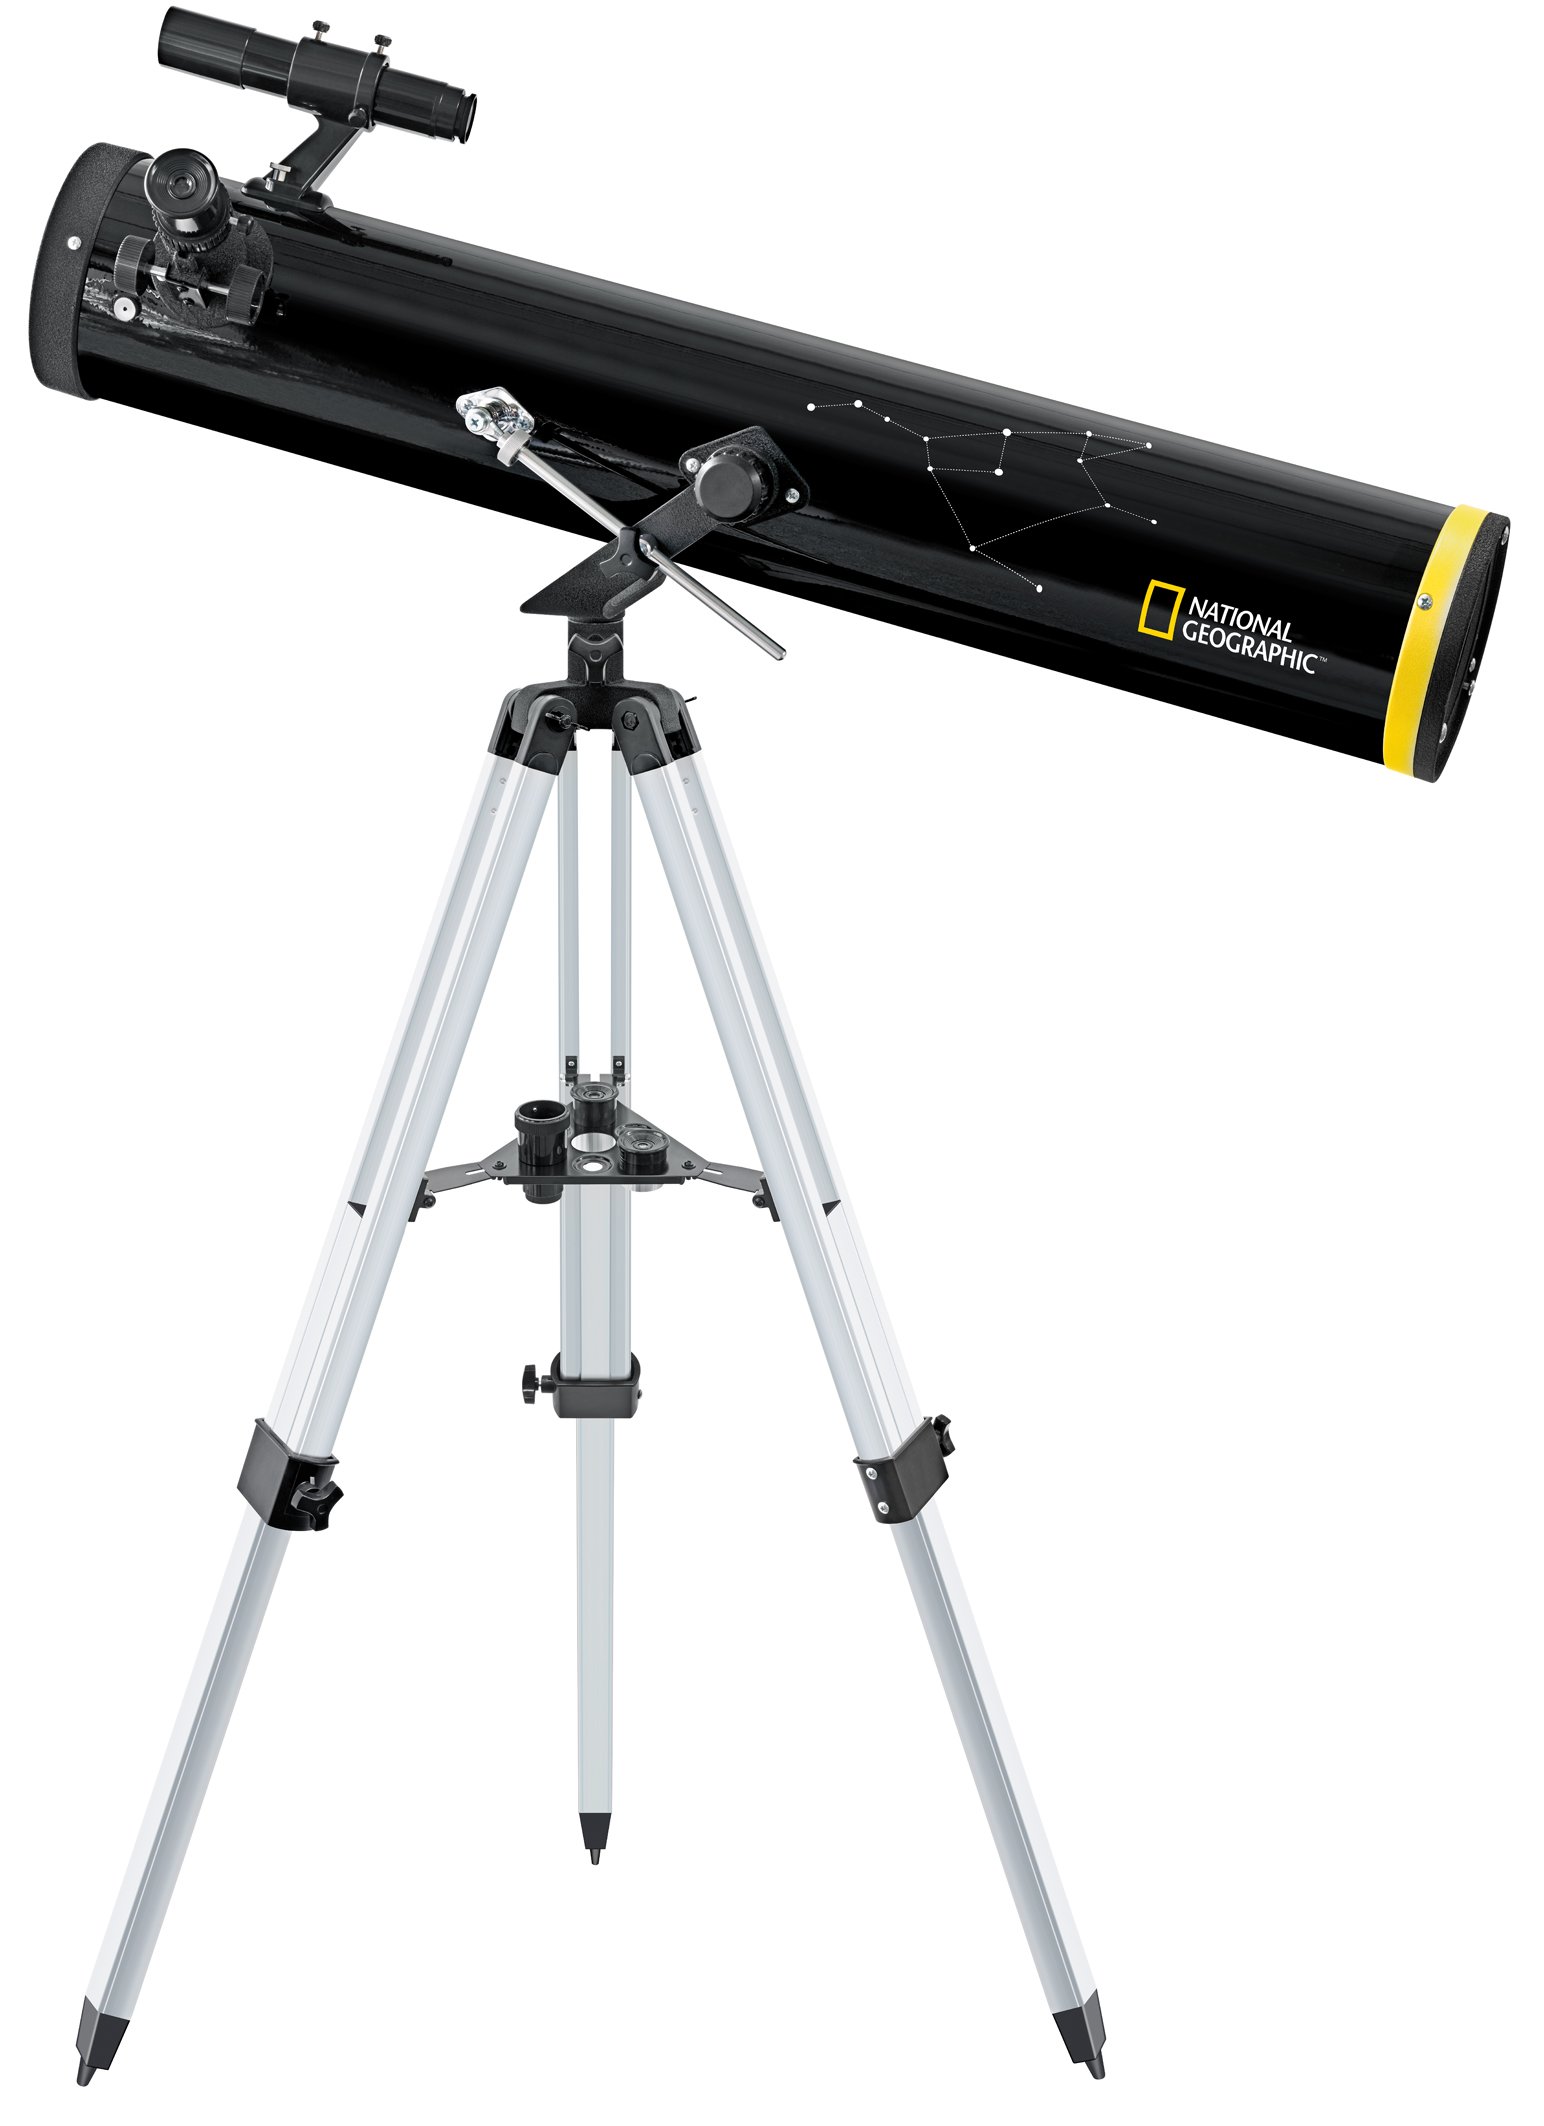 National Geographic Reflektor-Teleskop 114/900 AZ - Spiegelteleskop für Einsteiger mit leicht zu bedienender azimutaler Montierung und umfangreichem Zubehör